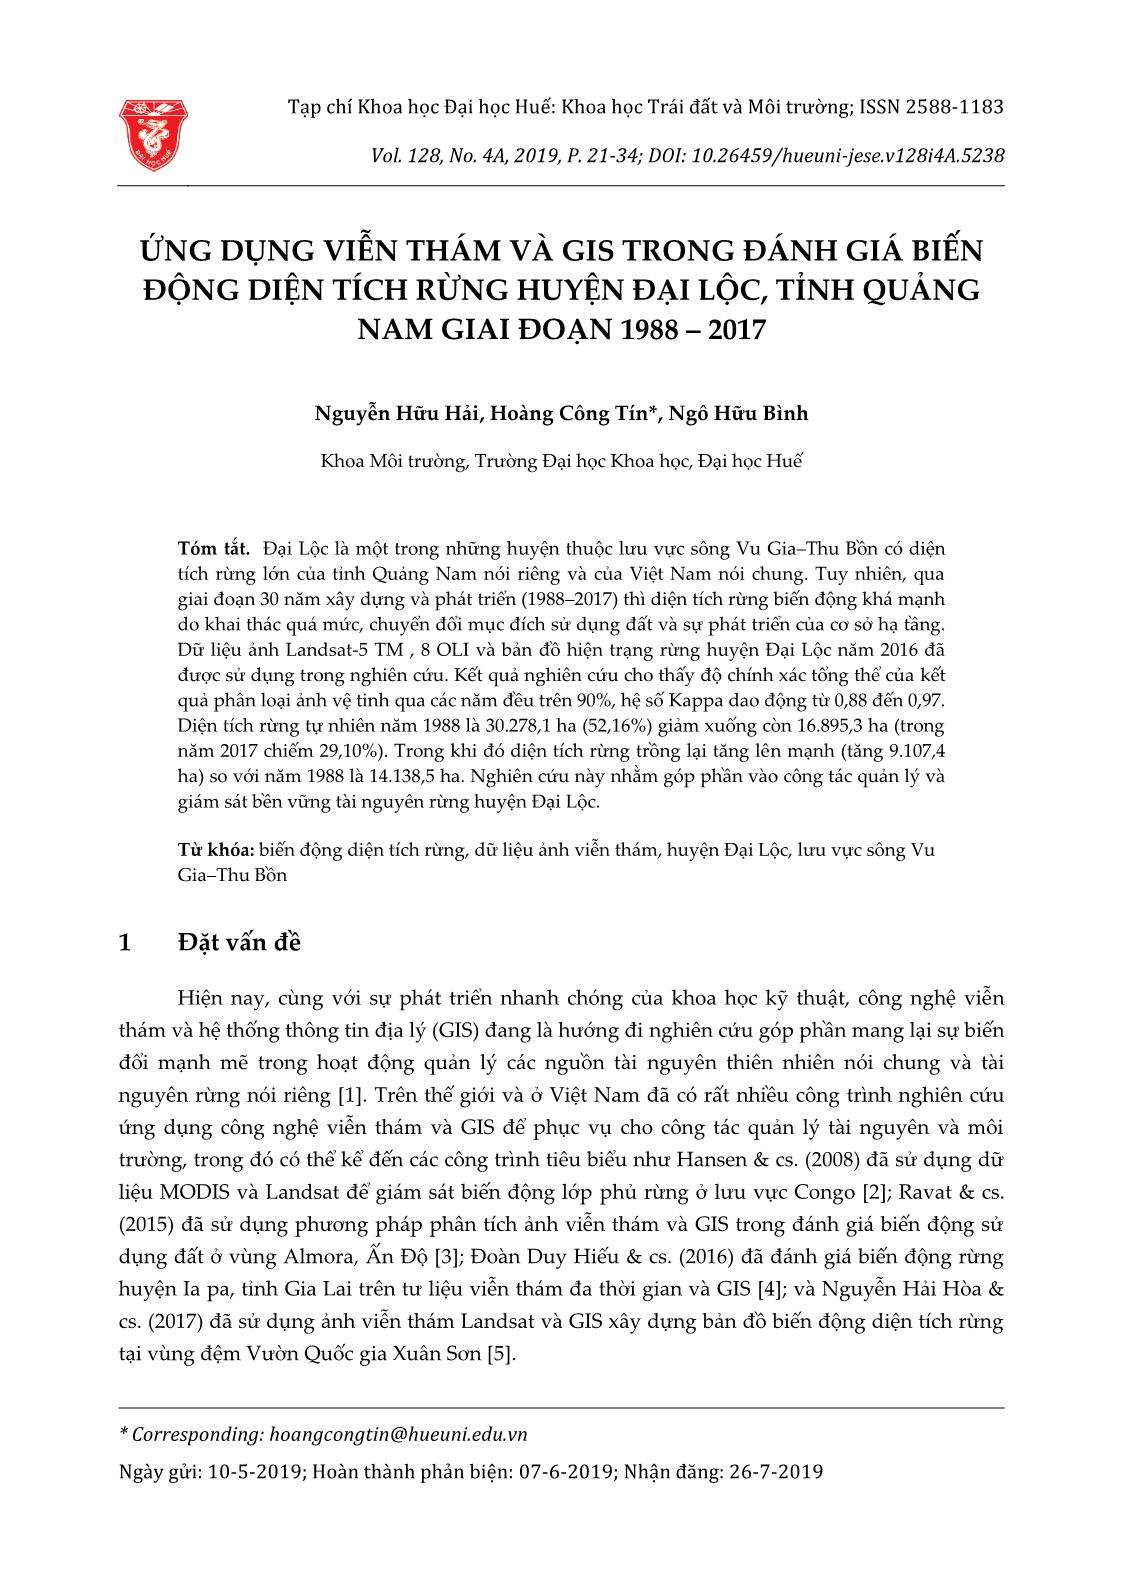 Ứng dụng viễn thám và GIS trong đánh giá biến động diện tích rừng huyện Đại Lộc, tỉnh Quảng Nam giai đoạn 1988-2017 trang 1